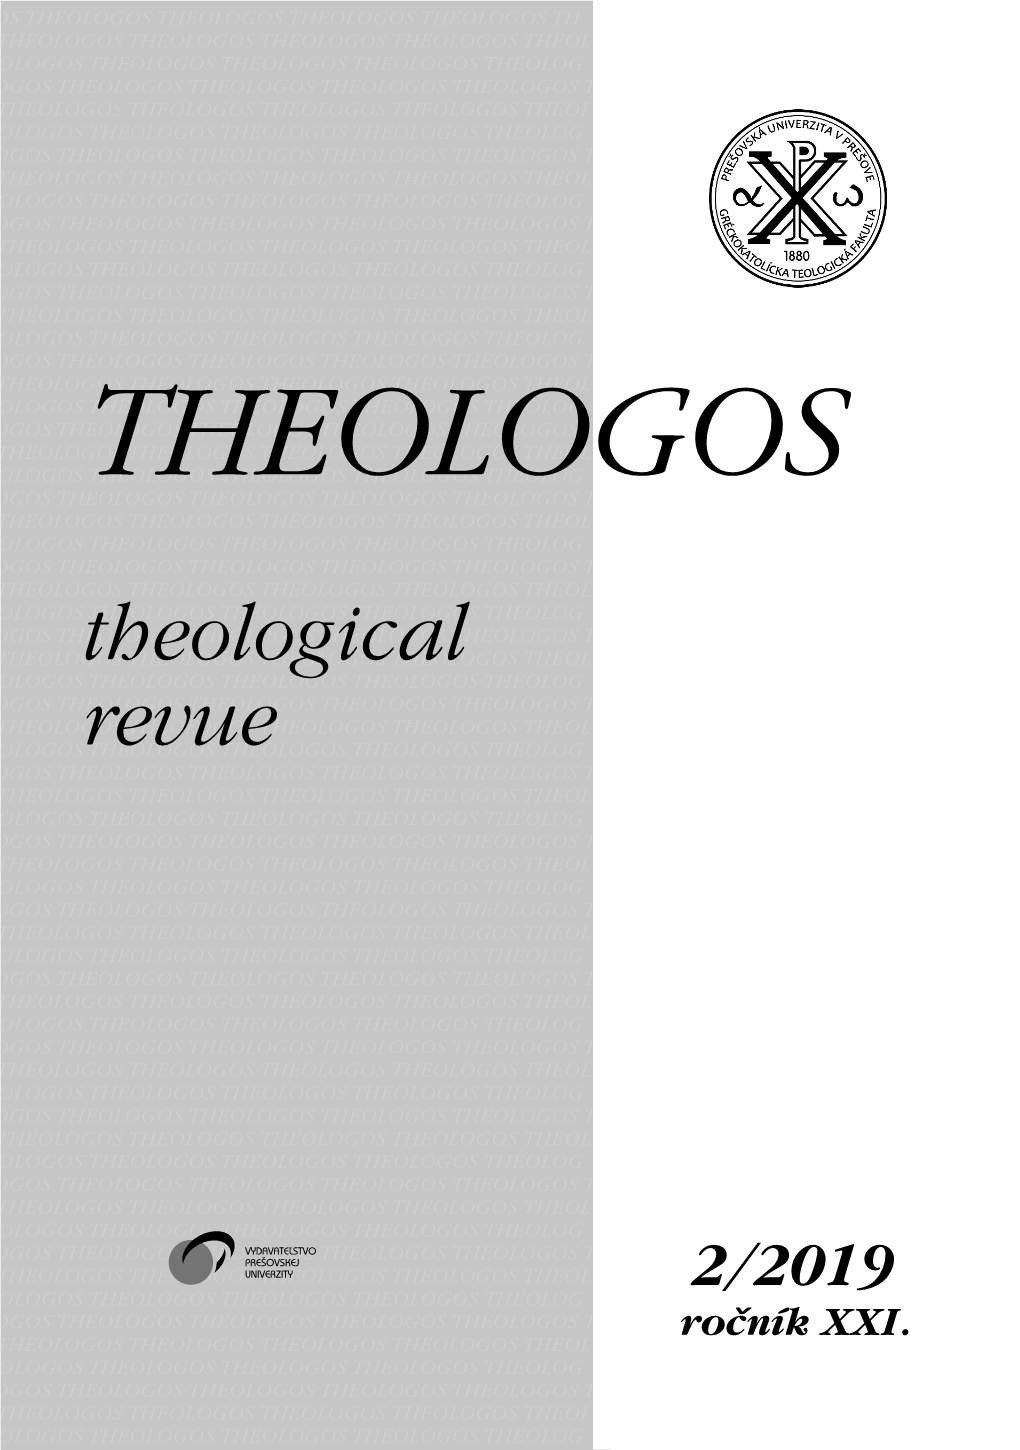 Theologos Os Theologos Theologos Theologos Theologos Theologos Theologos Theologos Theologos Theologos Theologos Th